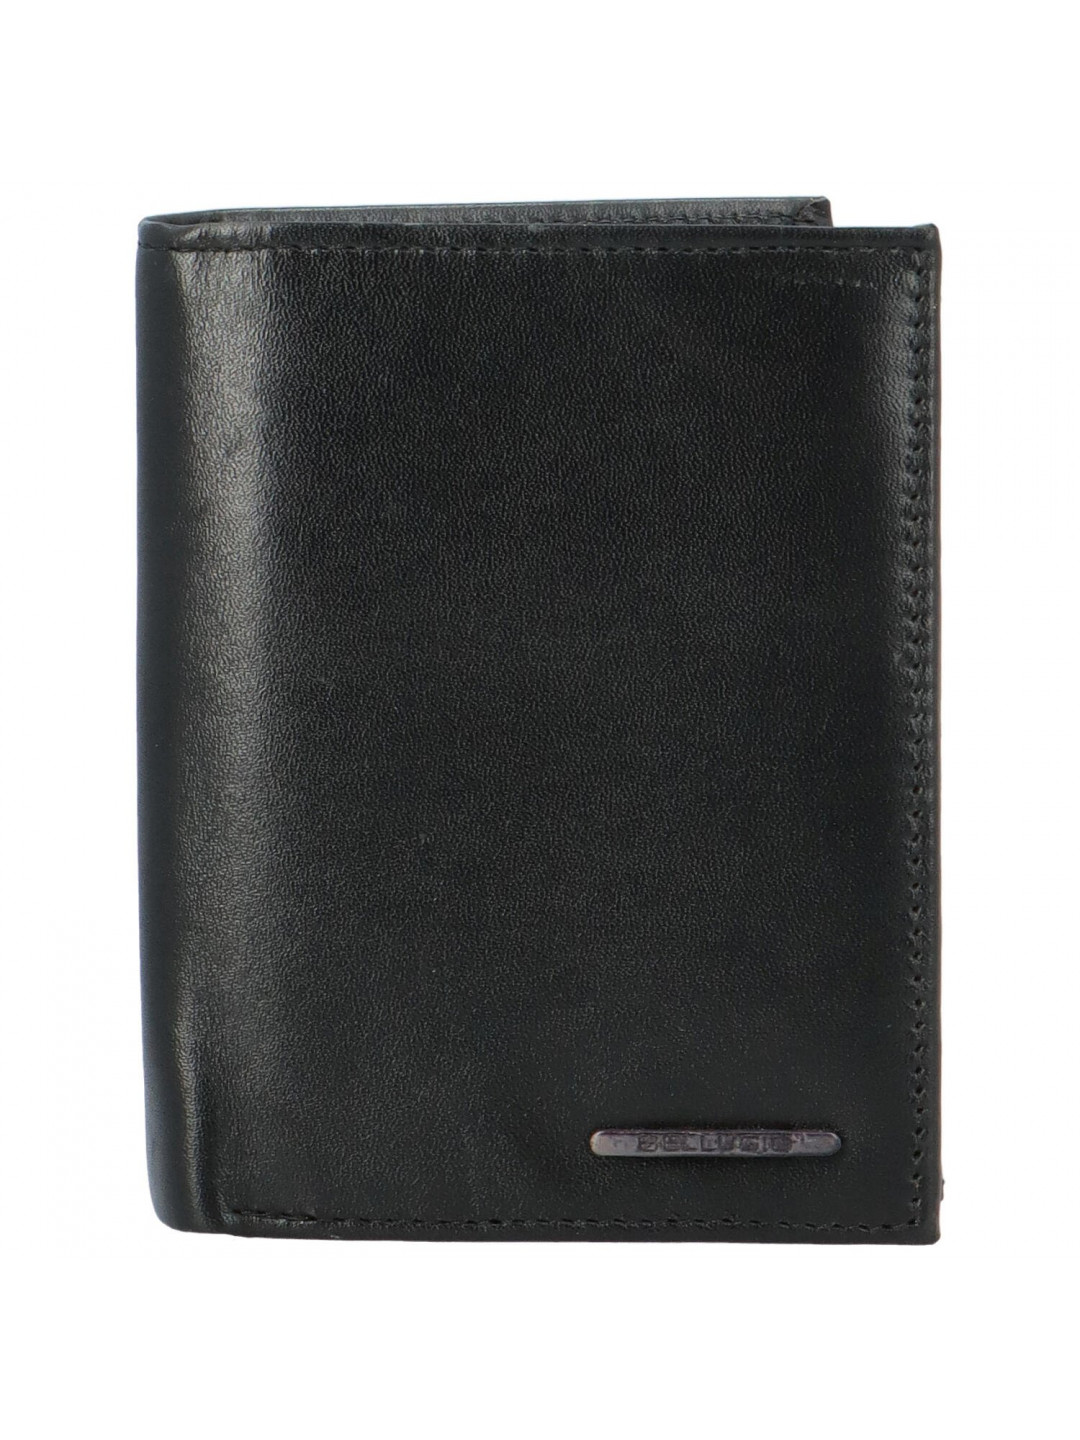 Pánská kožená peněženka černá – Bellugio Marphy